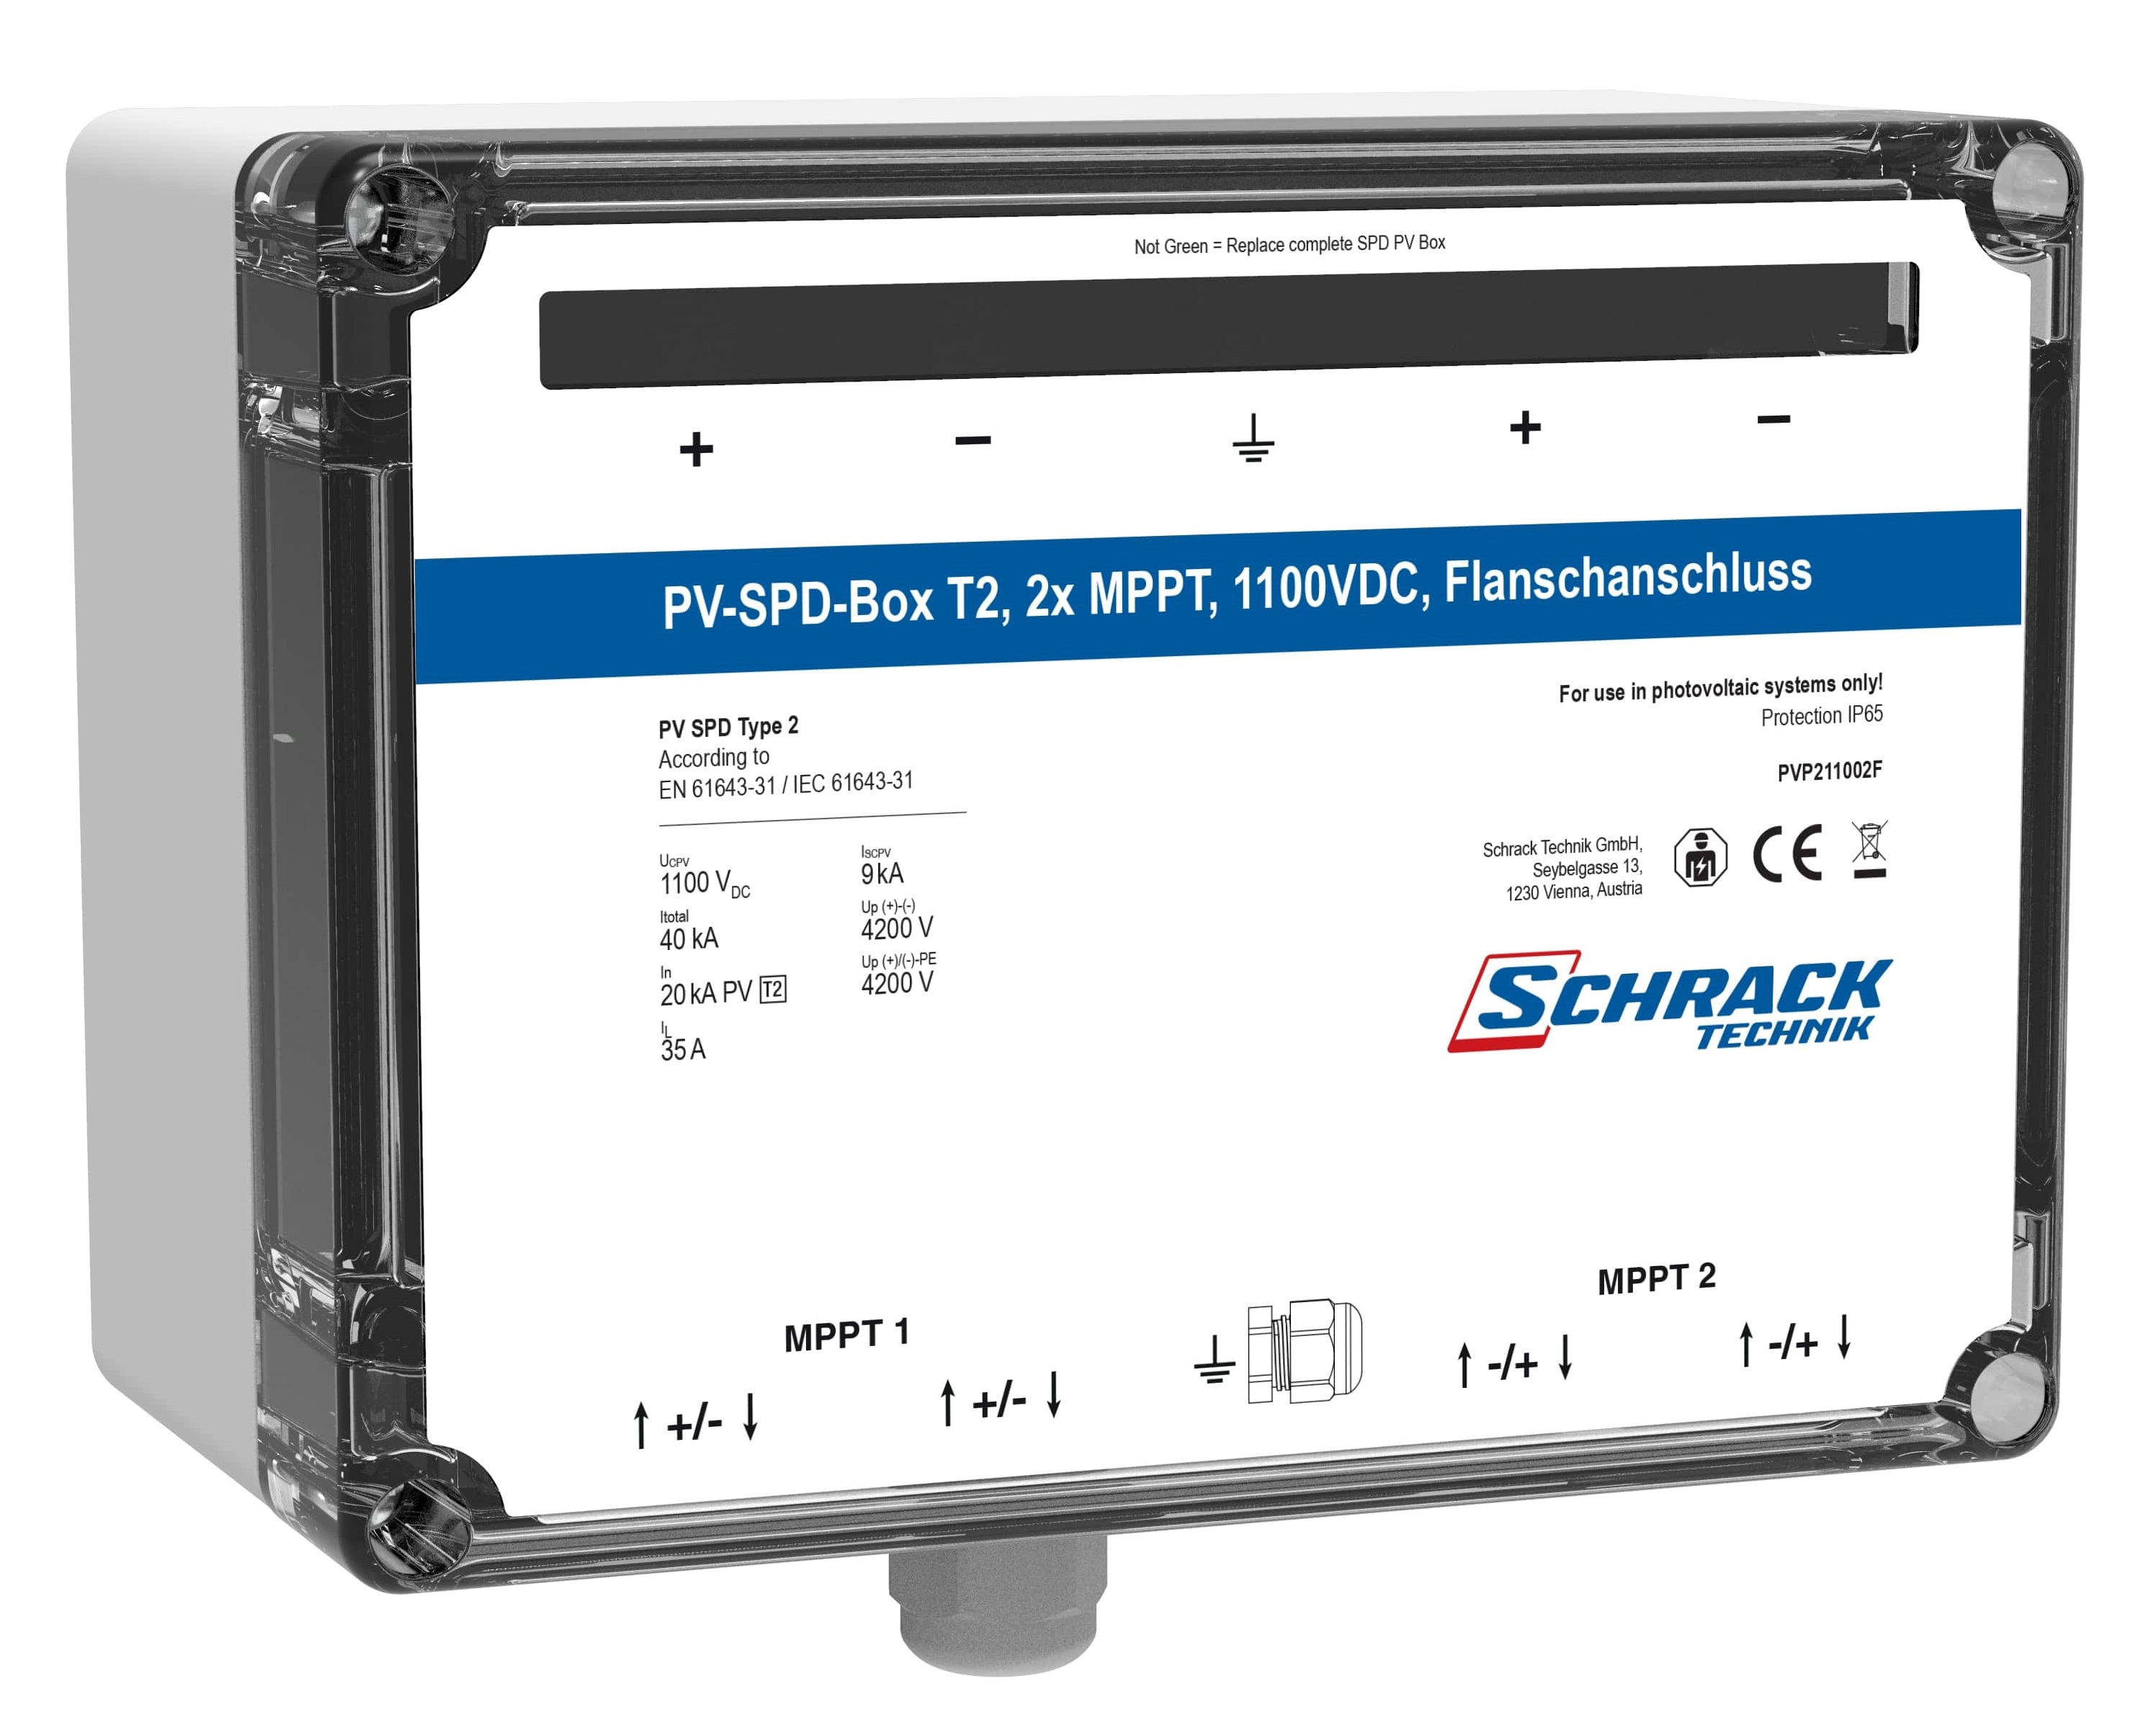 PV-SPD-Box T2, 2x MPPT, 1100VDC, Flanschanschluss